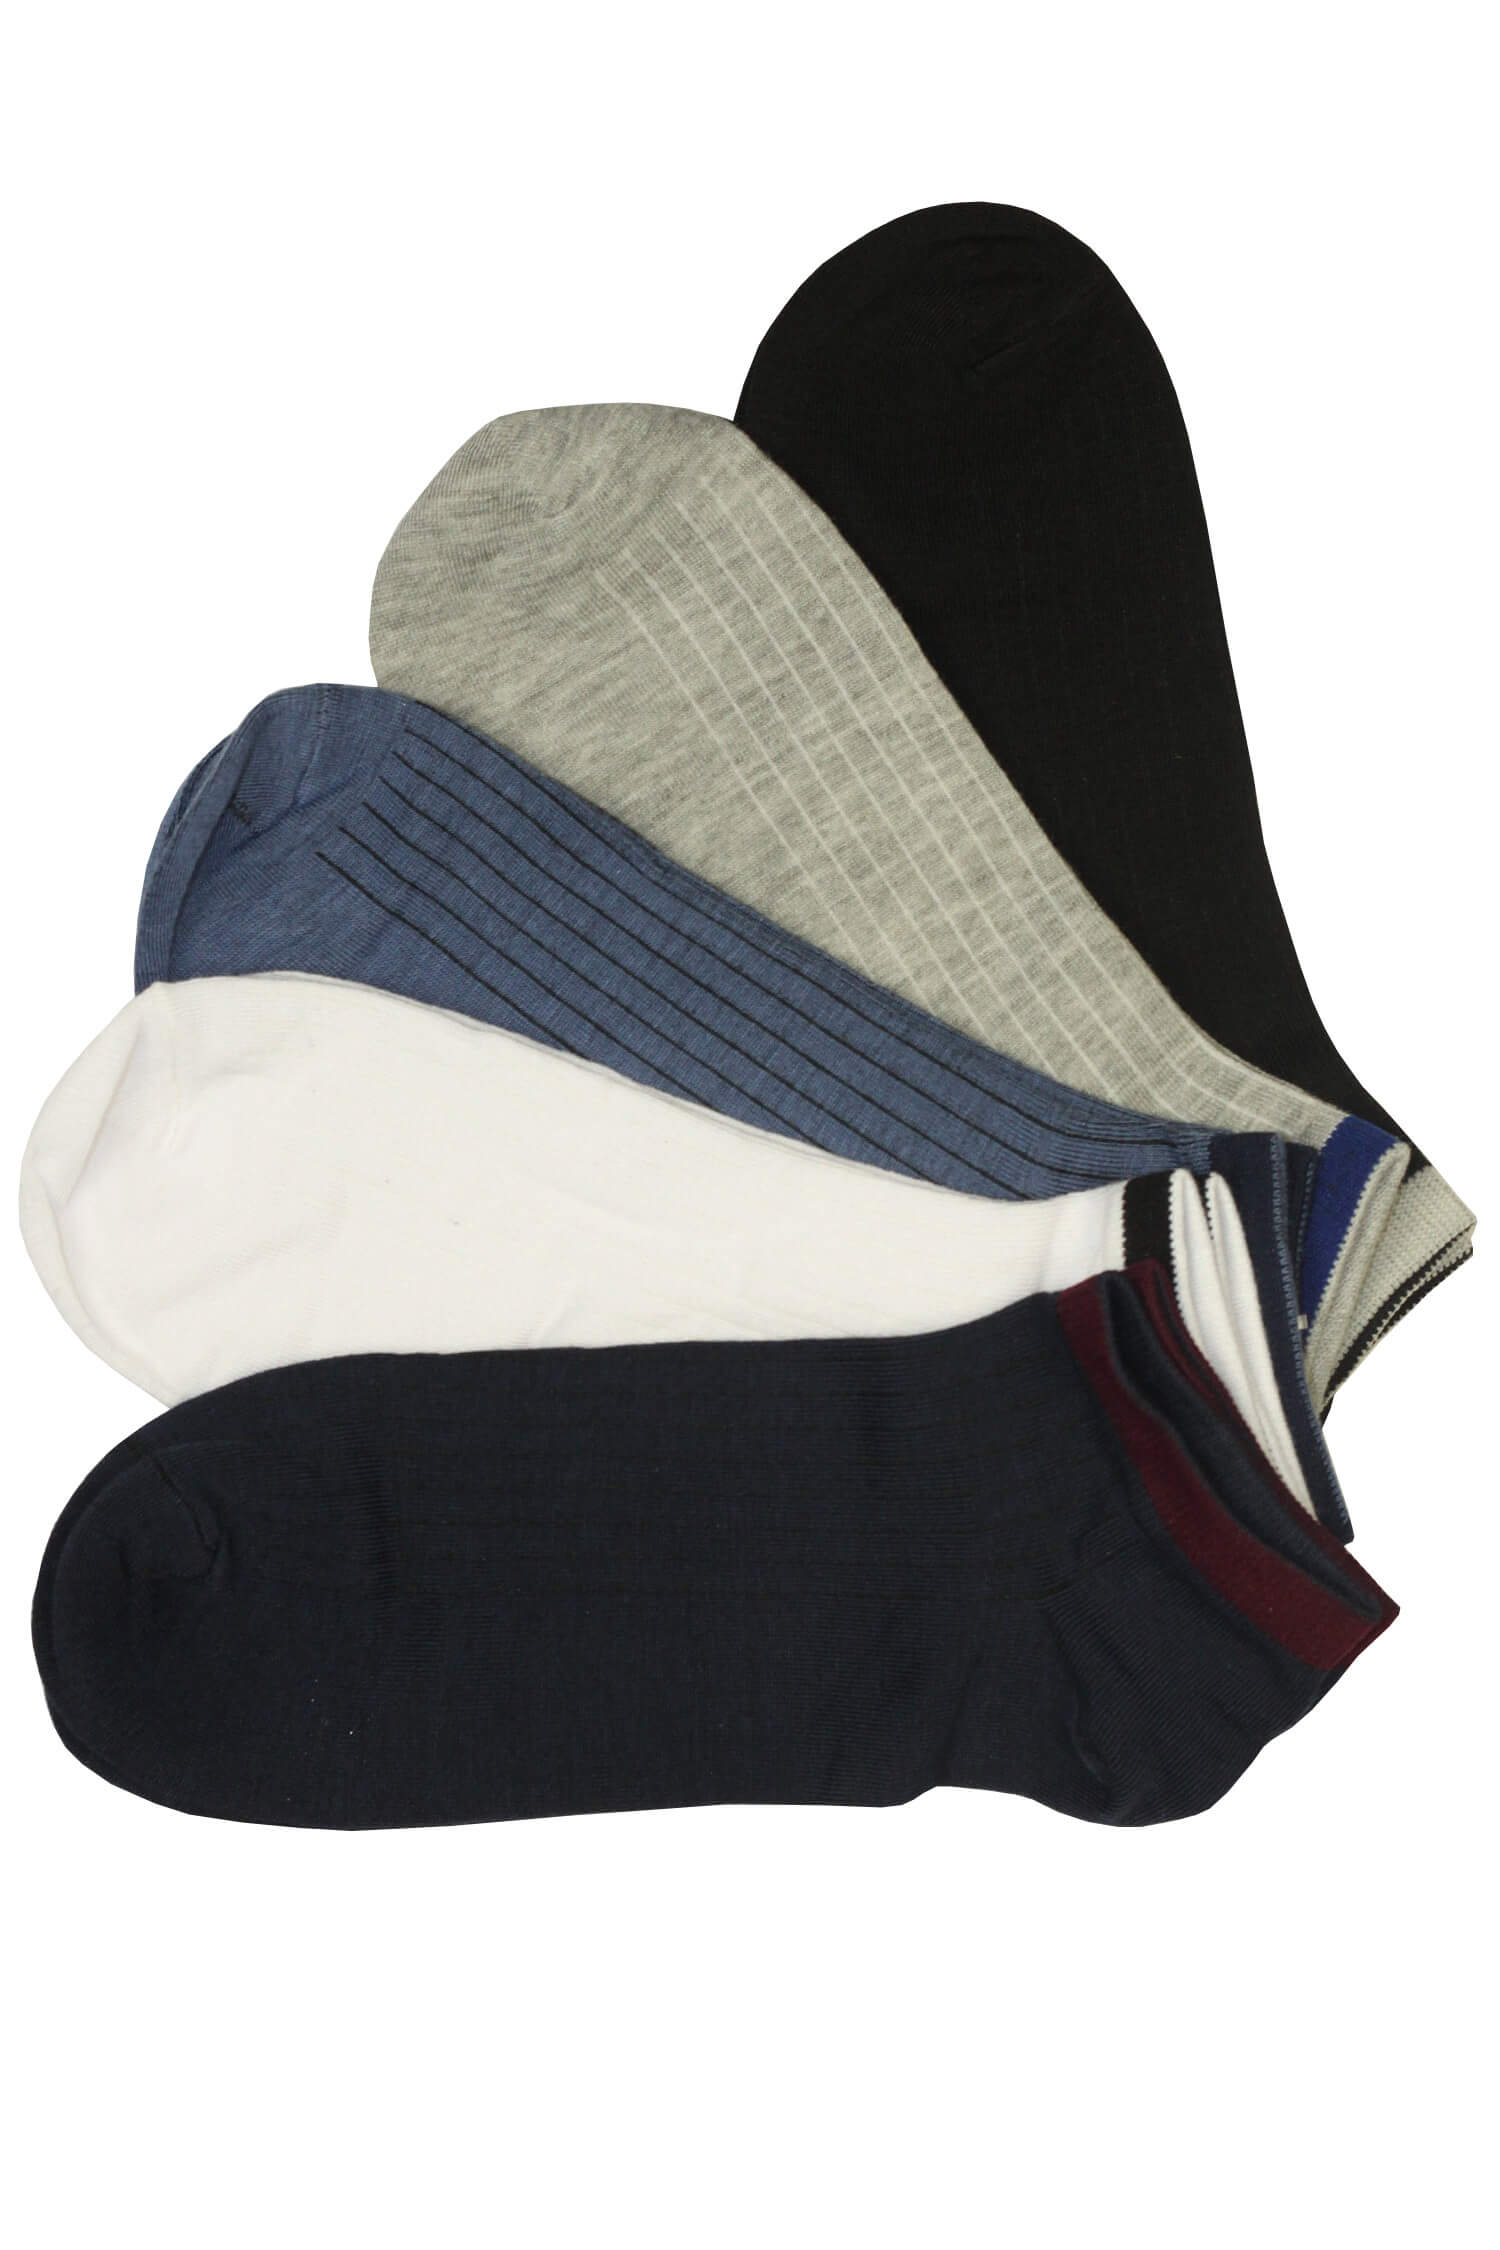 Pánské kotníčkové ponožky TM015 - 3 páry 40-43 vícebarevná